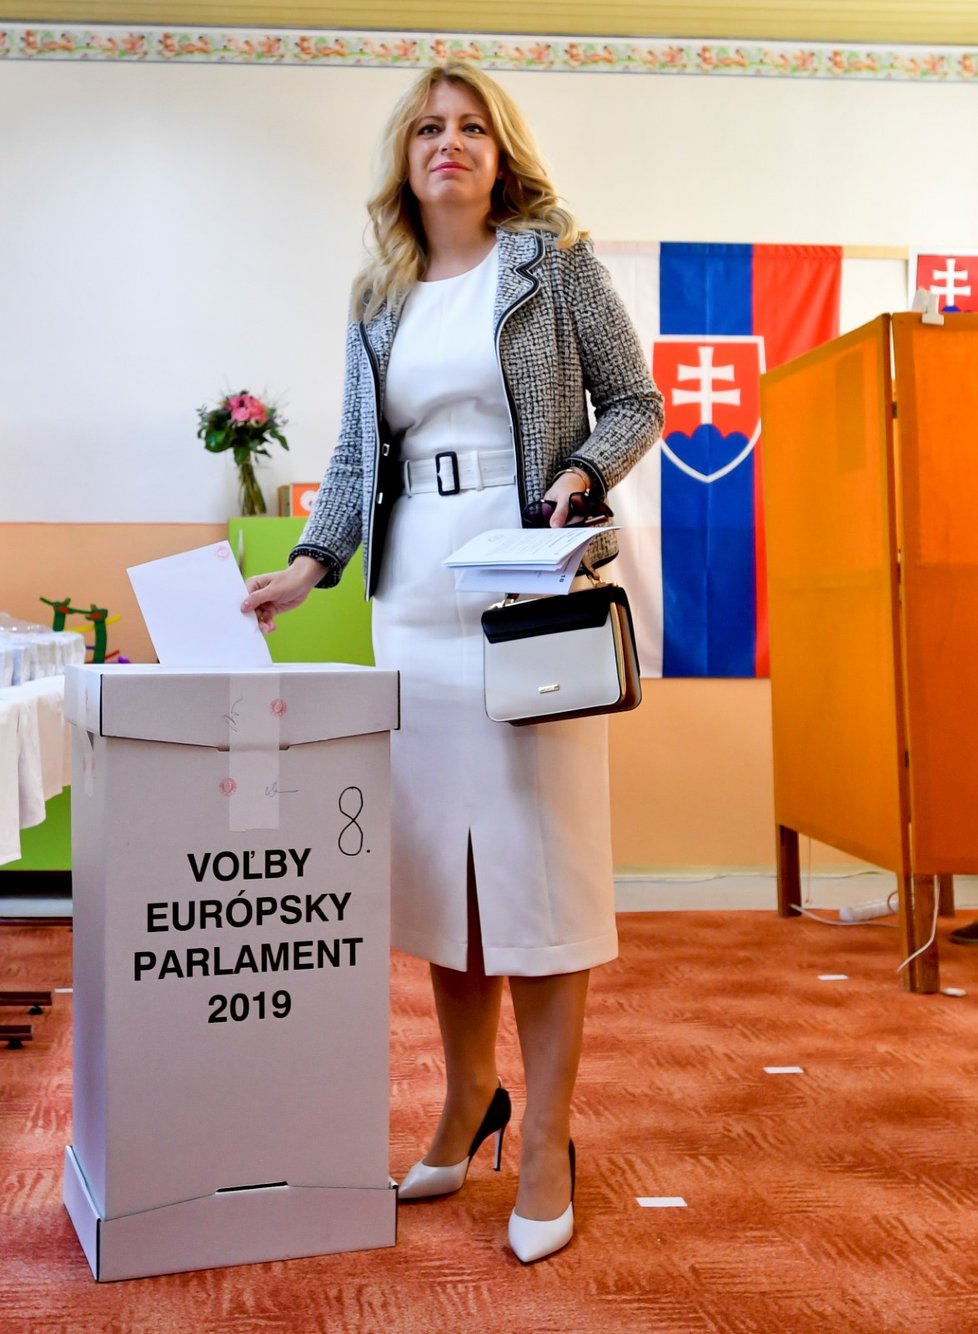 Budoucí slovenská prezidentka Zuzana Čaputová má už odvoleno. Své hlasy odevzdala v Pezinku, kde s rodinou bydlí a odkud se nechce stěhovat